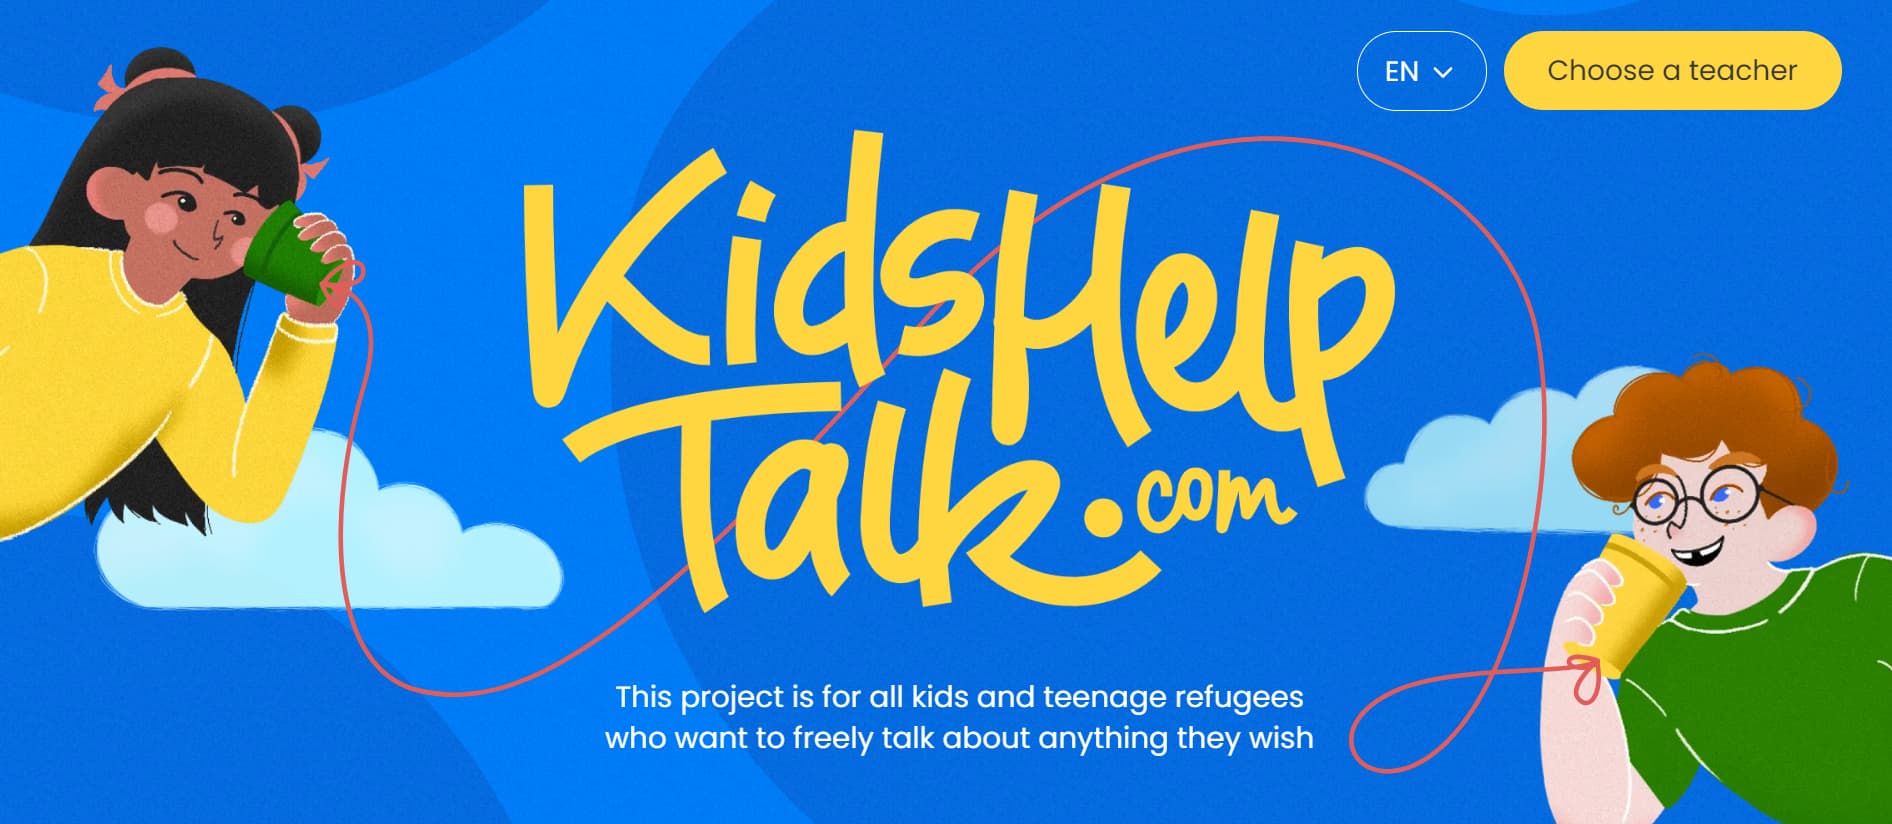 Kids Help Talk